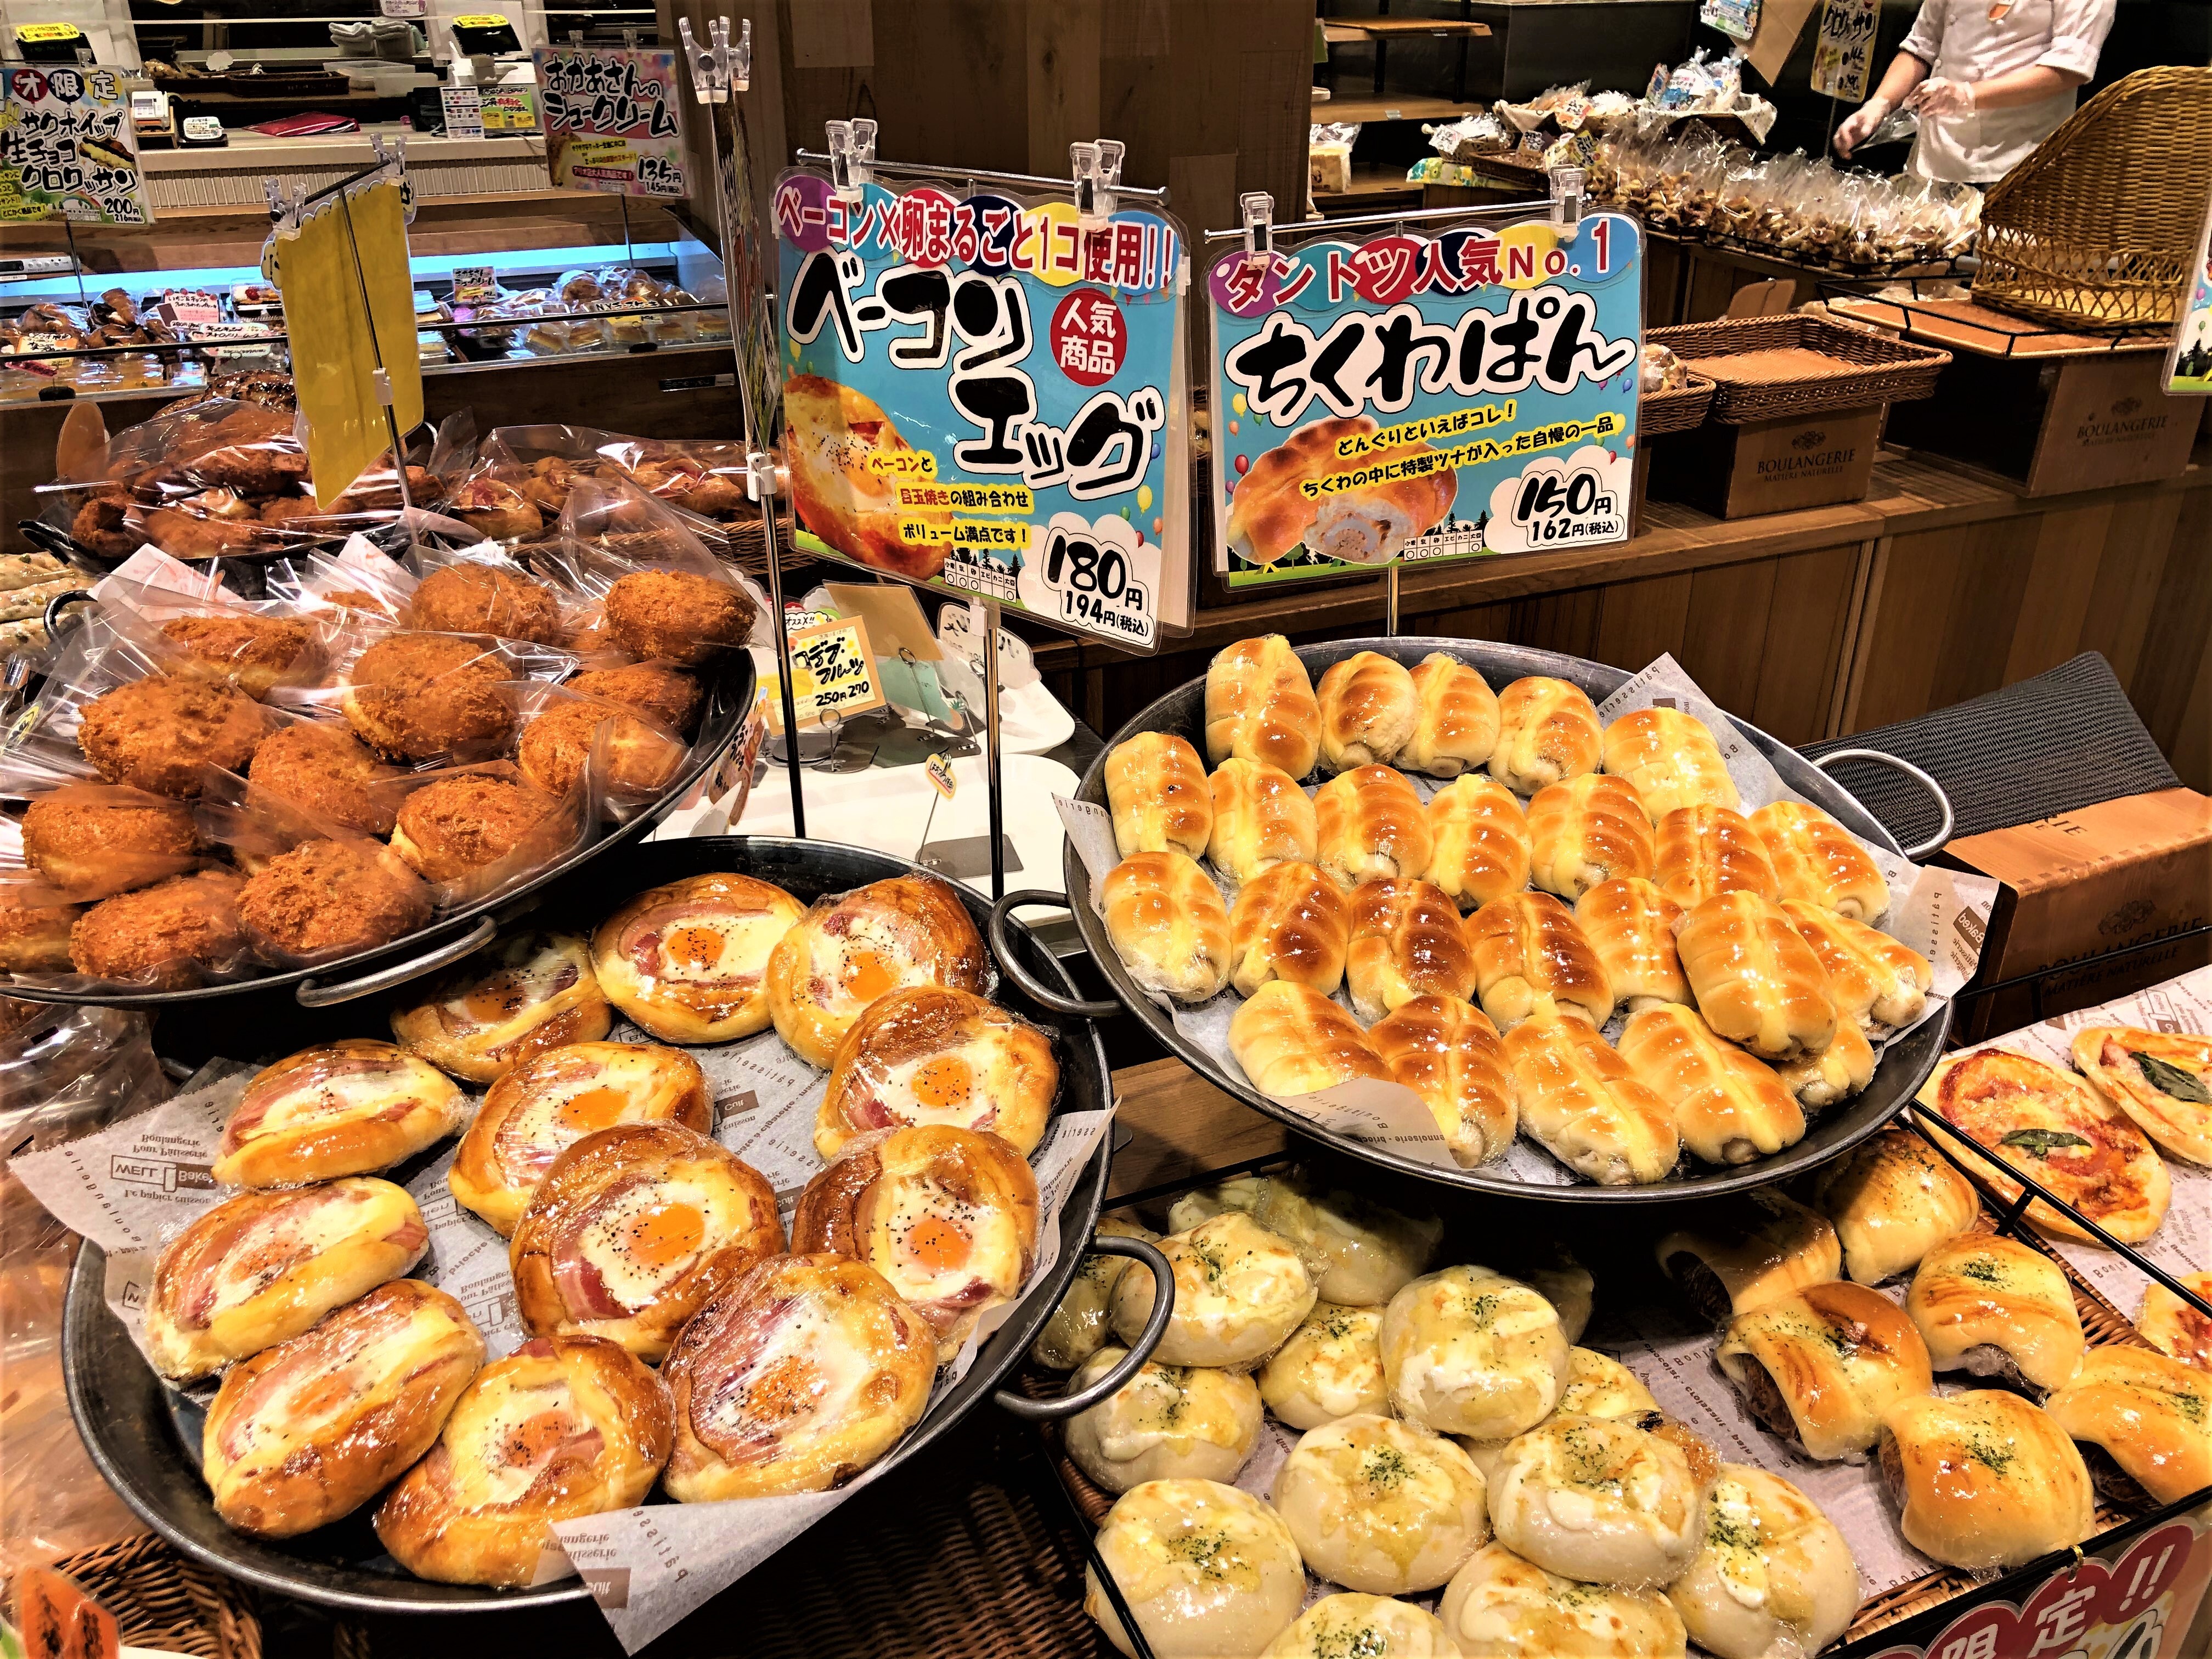 もったいない アリオ店 セット 18個入 税込 送料別 札幌のパン屋 どんぐり 公式オンラインショップ